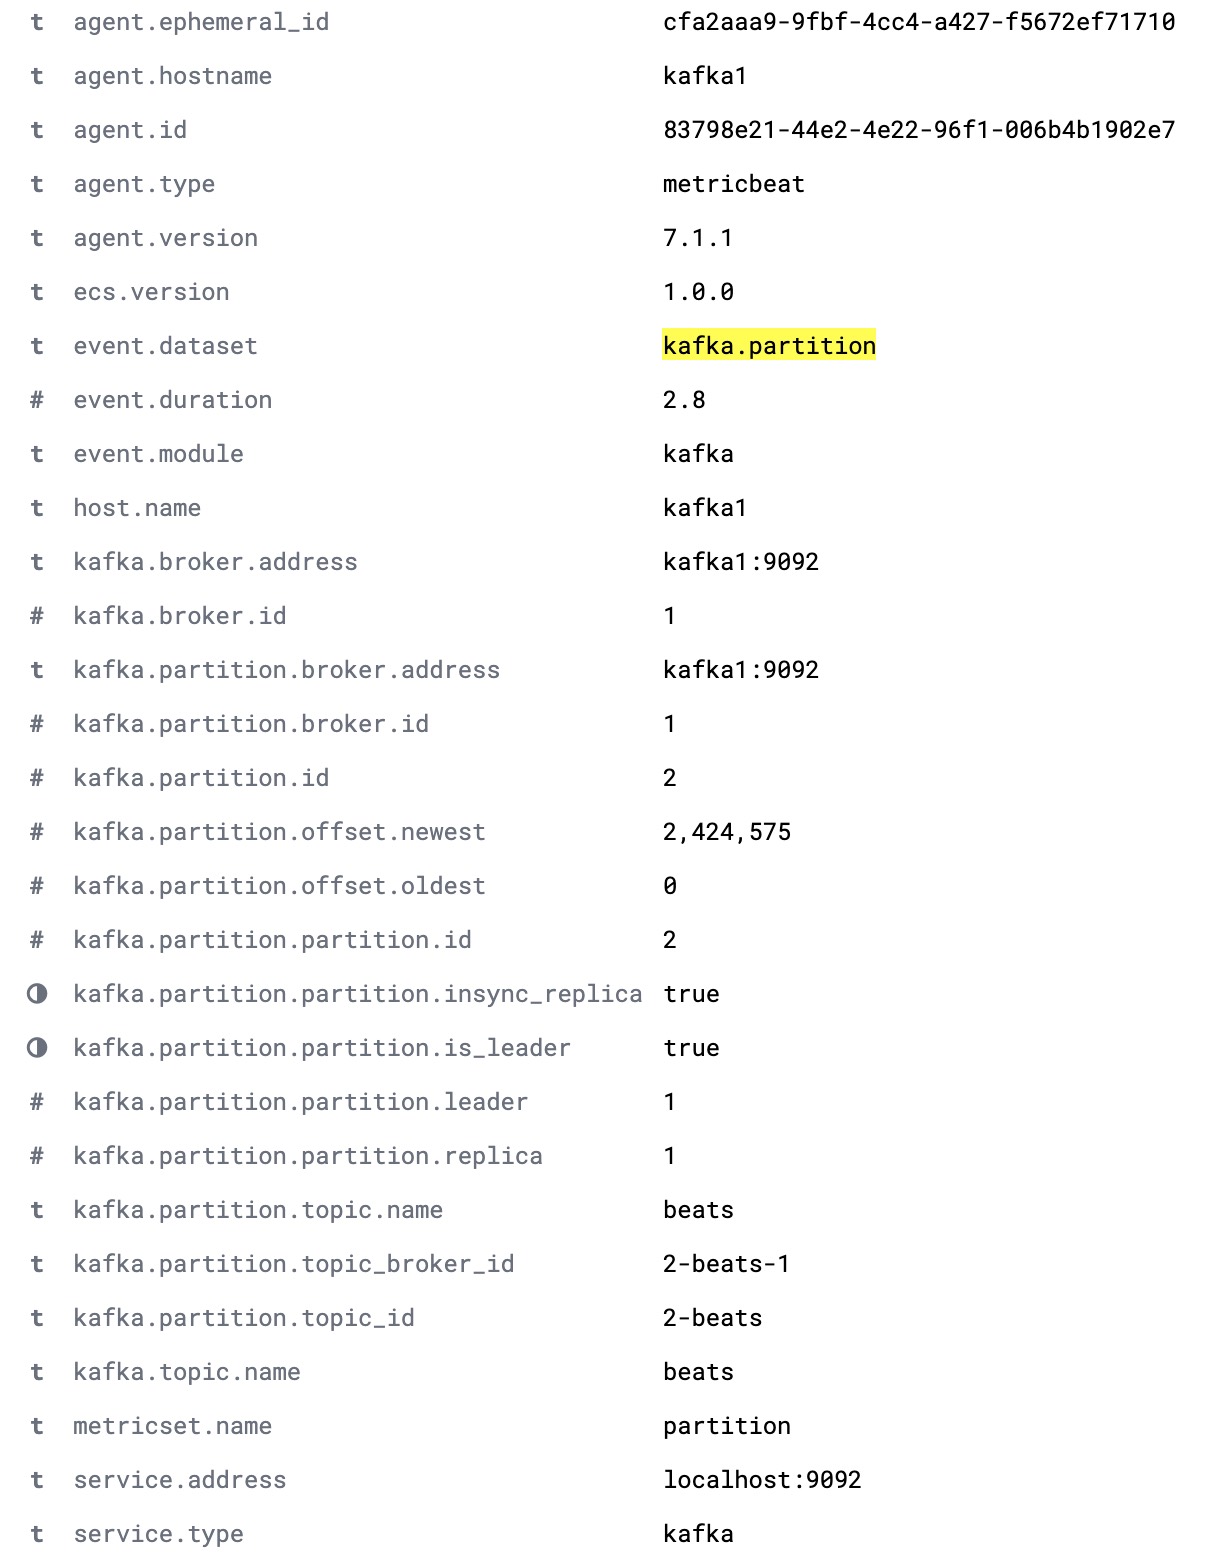 클러스터의 파티션 전체 세부사항을 보여주는 전체적인 kafka.partition 문서